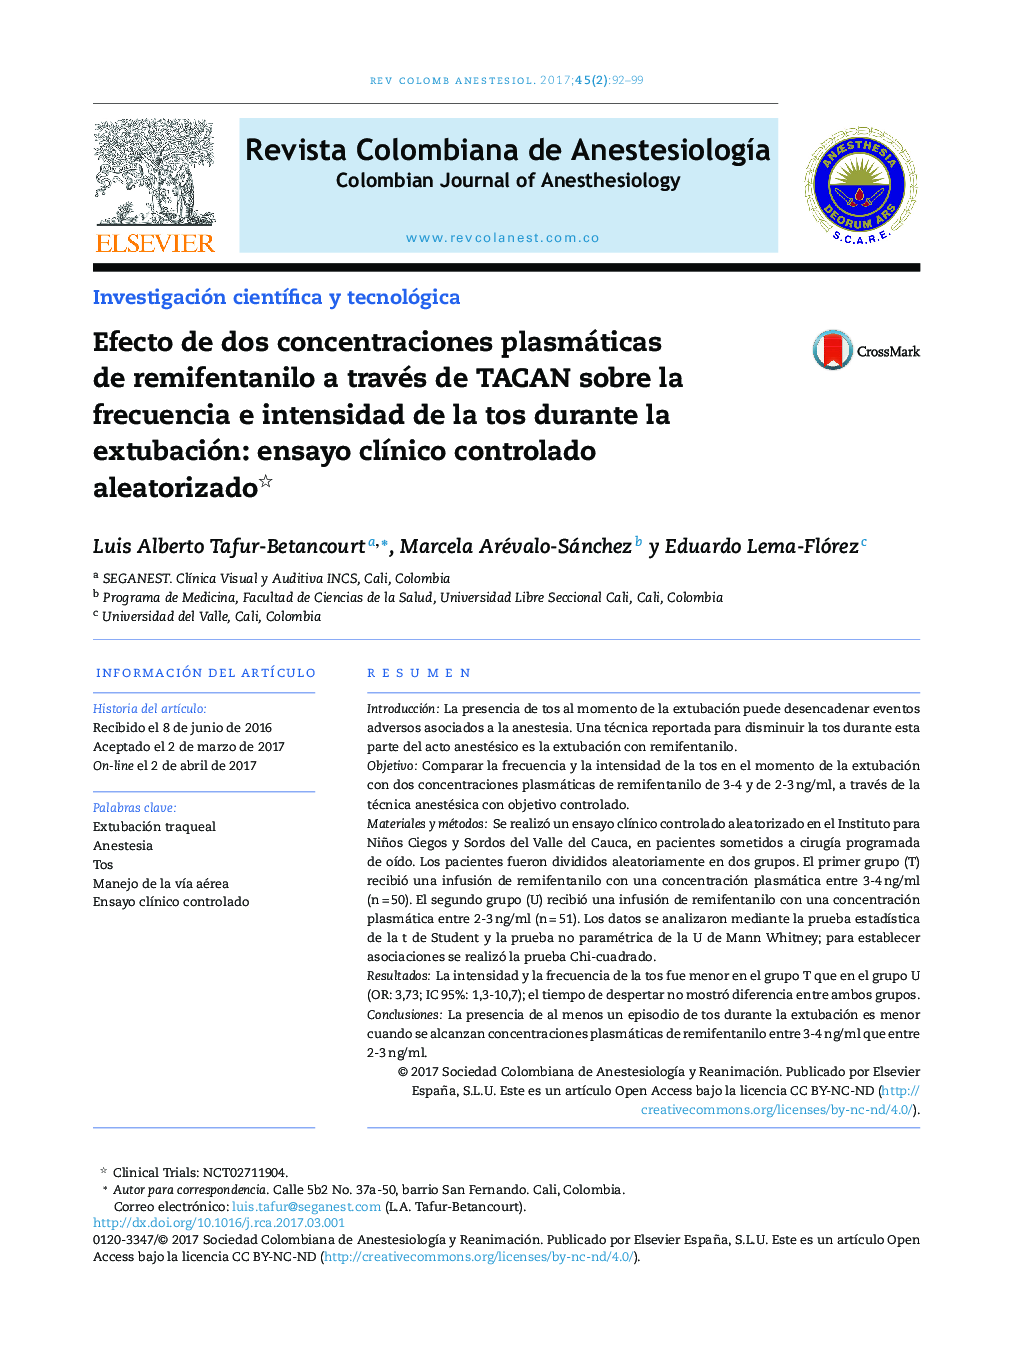 Efecto de dos concentraciones plasmáticas de remifentanilo a través de TACAN sobre la frecuencia e intensidad de la tos durante la extubación: ensayo clÃ­nico controlado aleatorizado